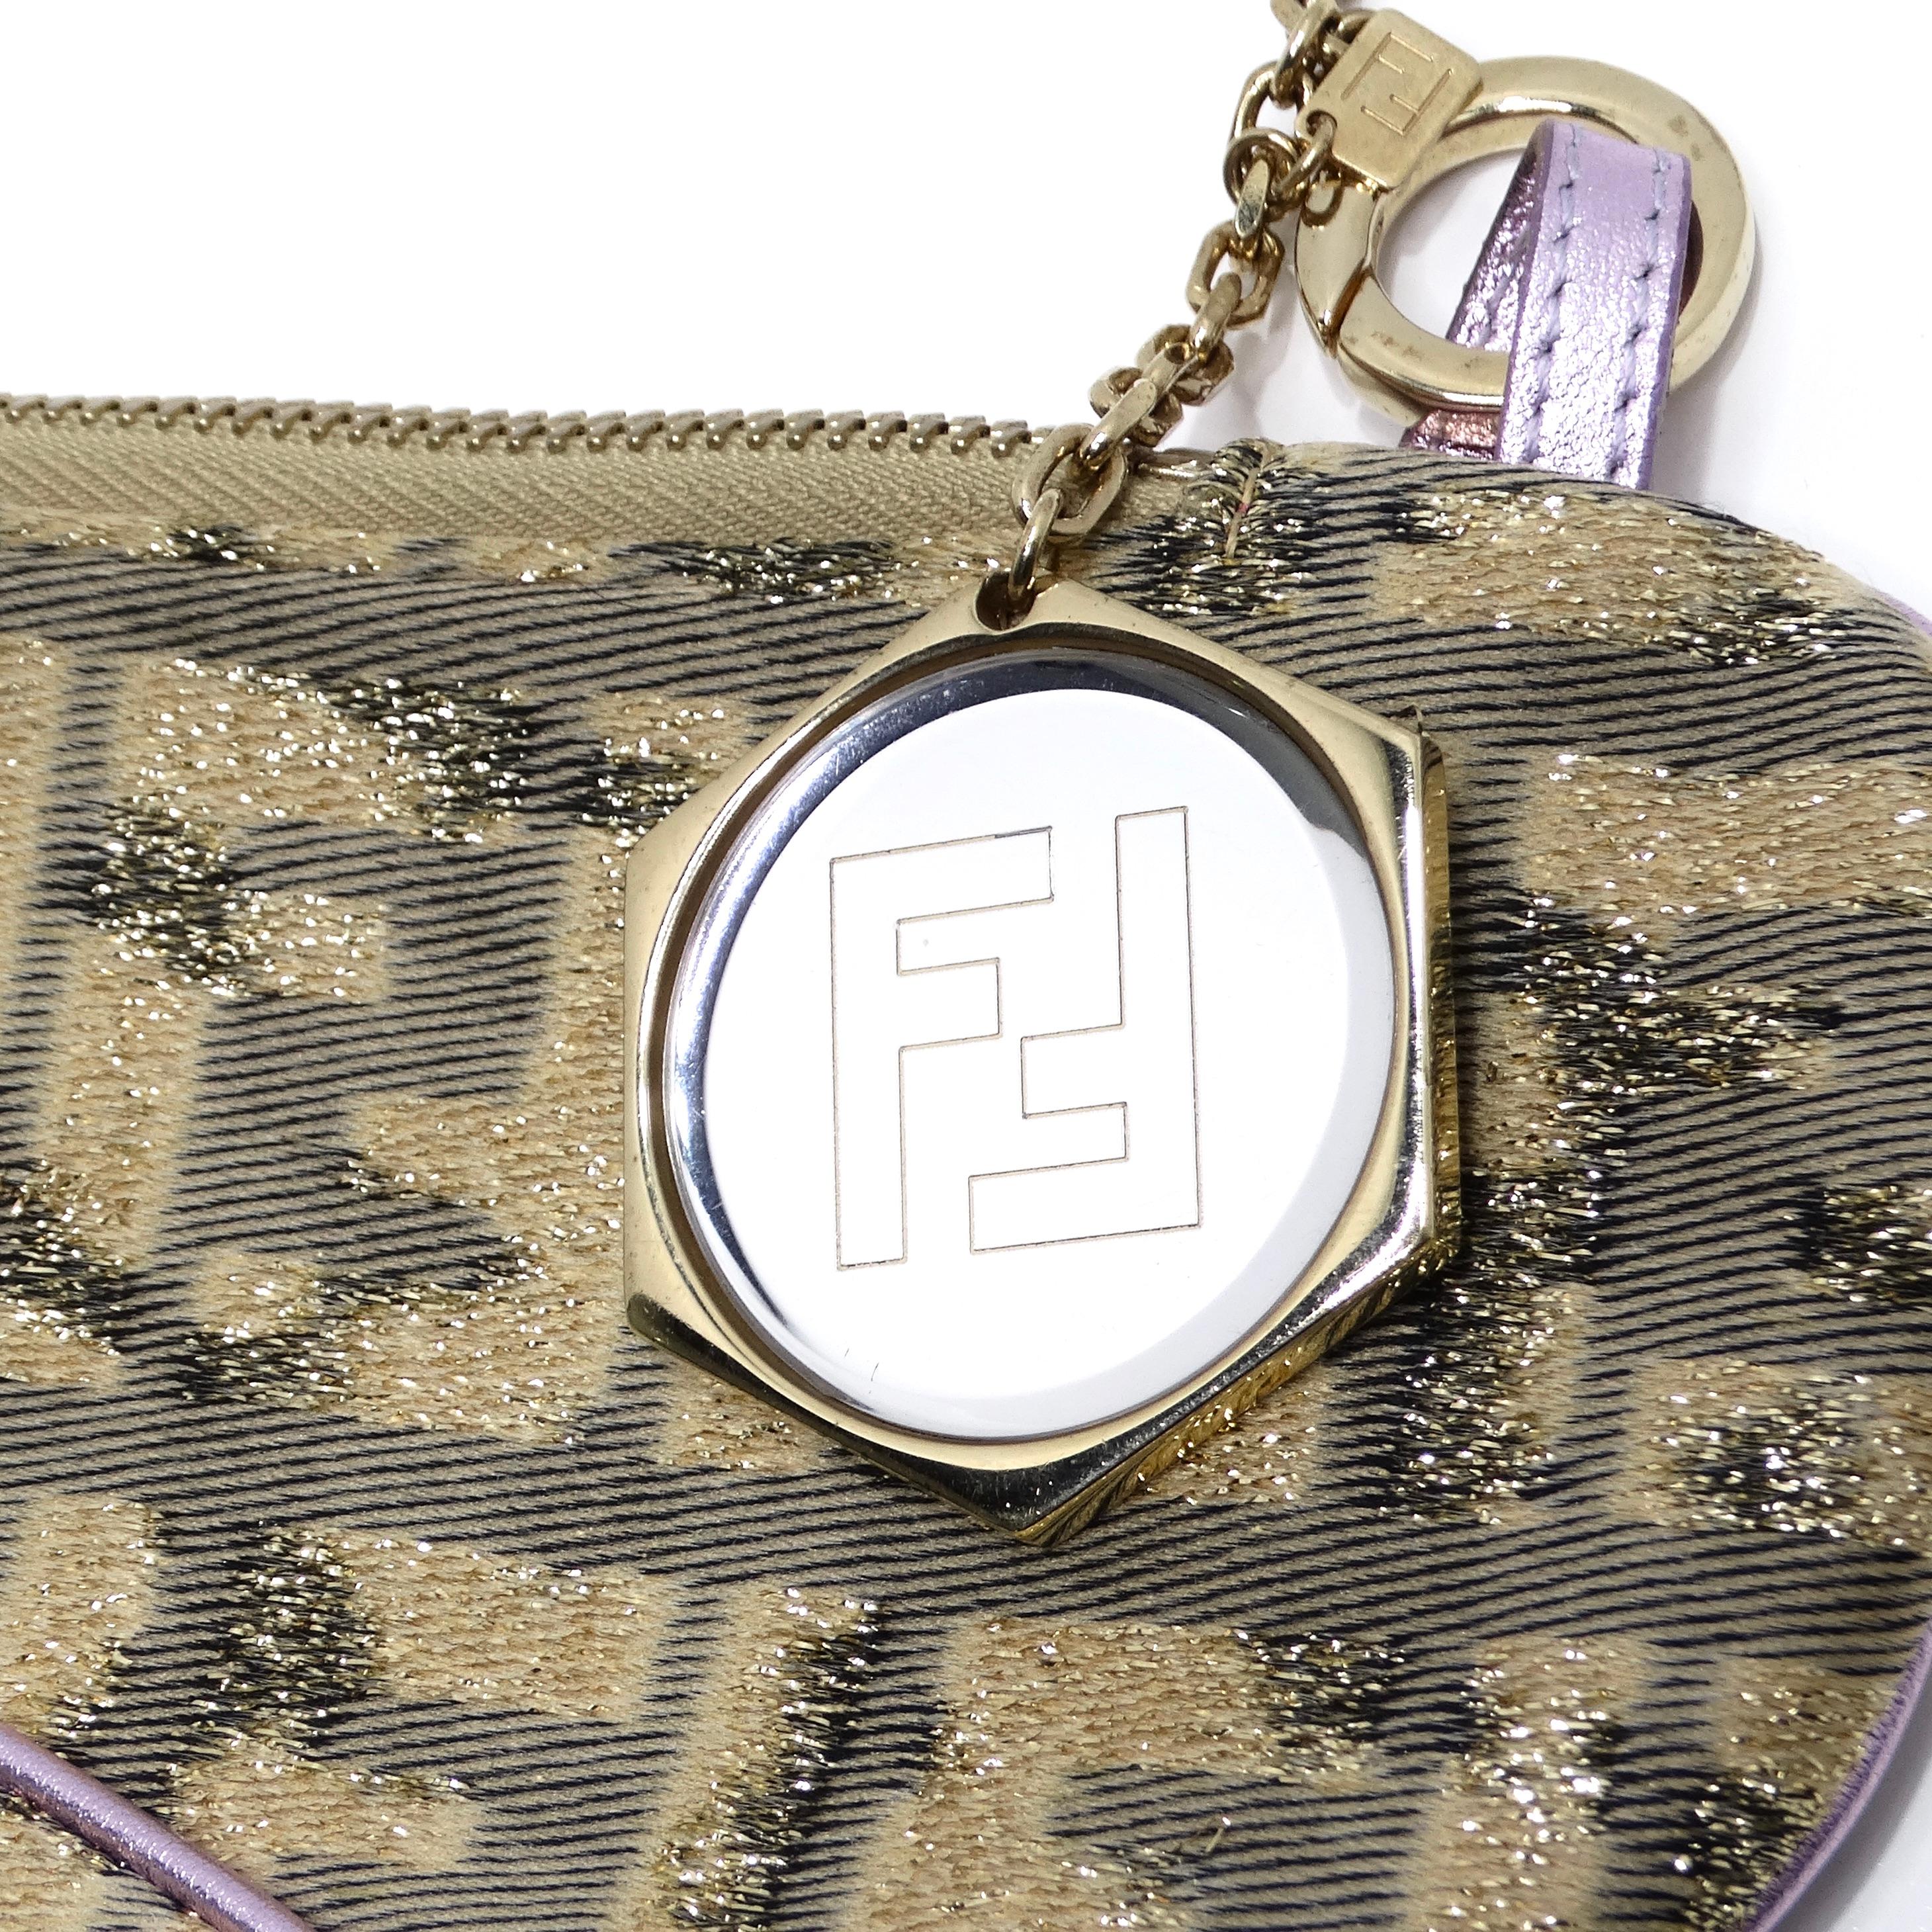 Wir präsentieren die Fendi 2002 Gold Lilac Zucca Monogram Micro Handtasche, eine fesselnde und verspielte Kreation, die Luxus und Raffinesse ausstrahlt. Diese mit viel Liebe zum Detail gefertigte Mini-Schultertasche in limitierter Auflage ist ein